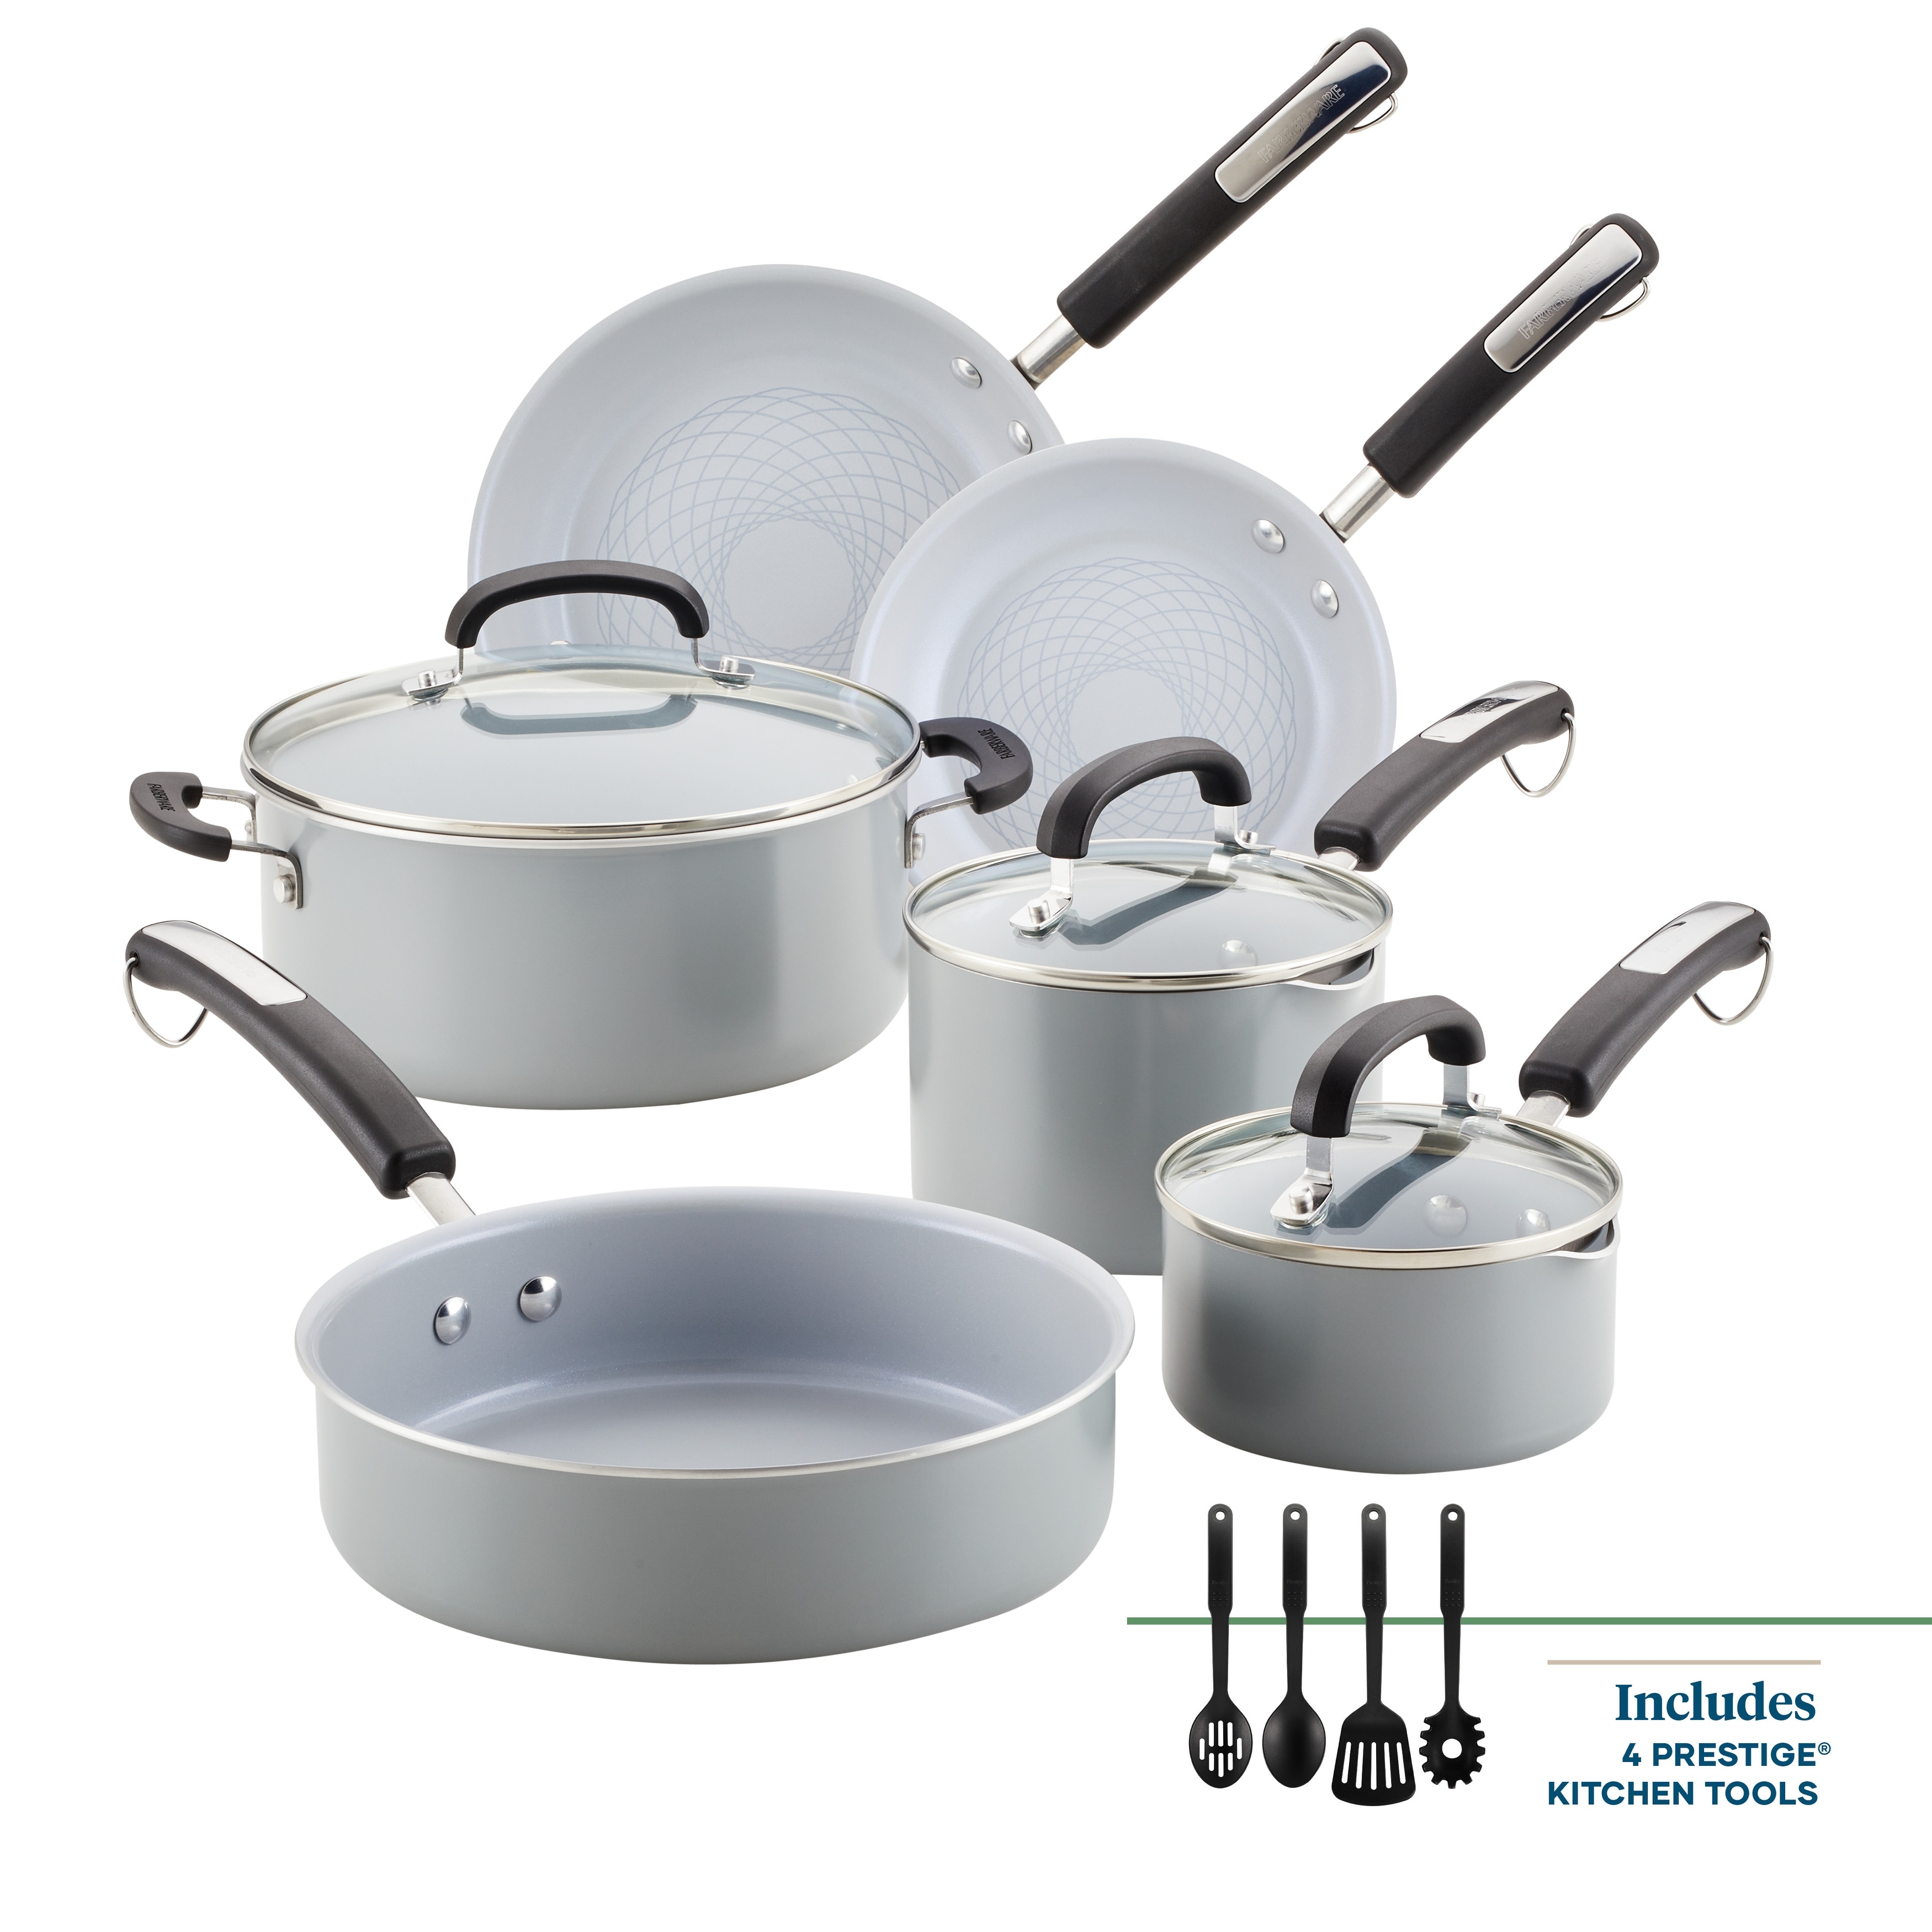  Calphalon 13-Piece Pots and Pans Set, Nonstick Kitchen